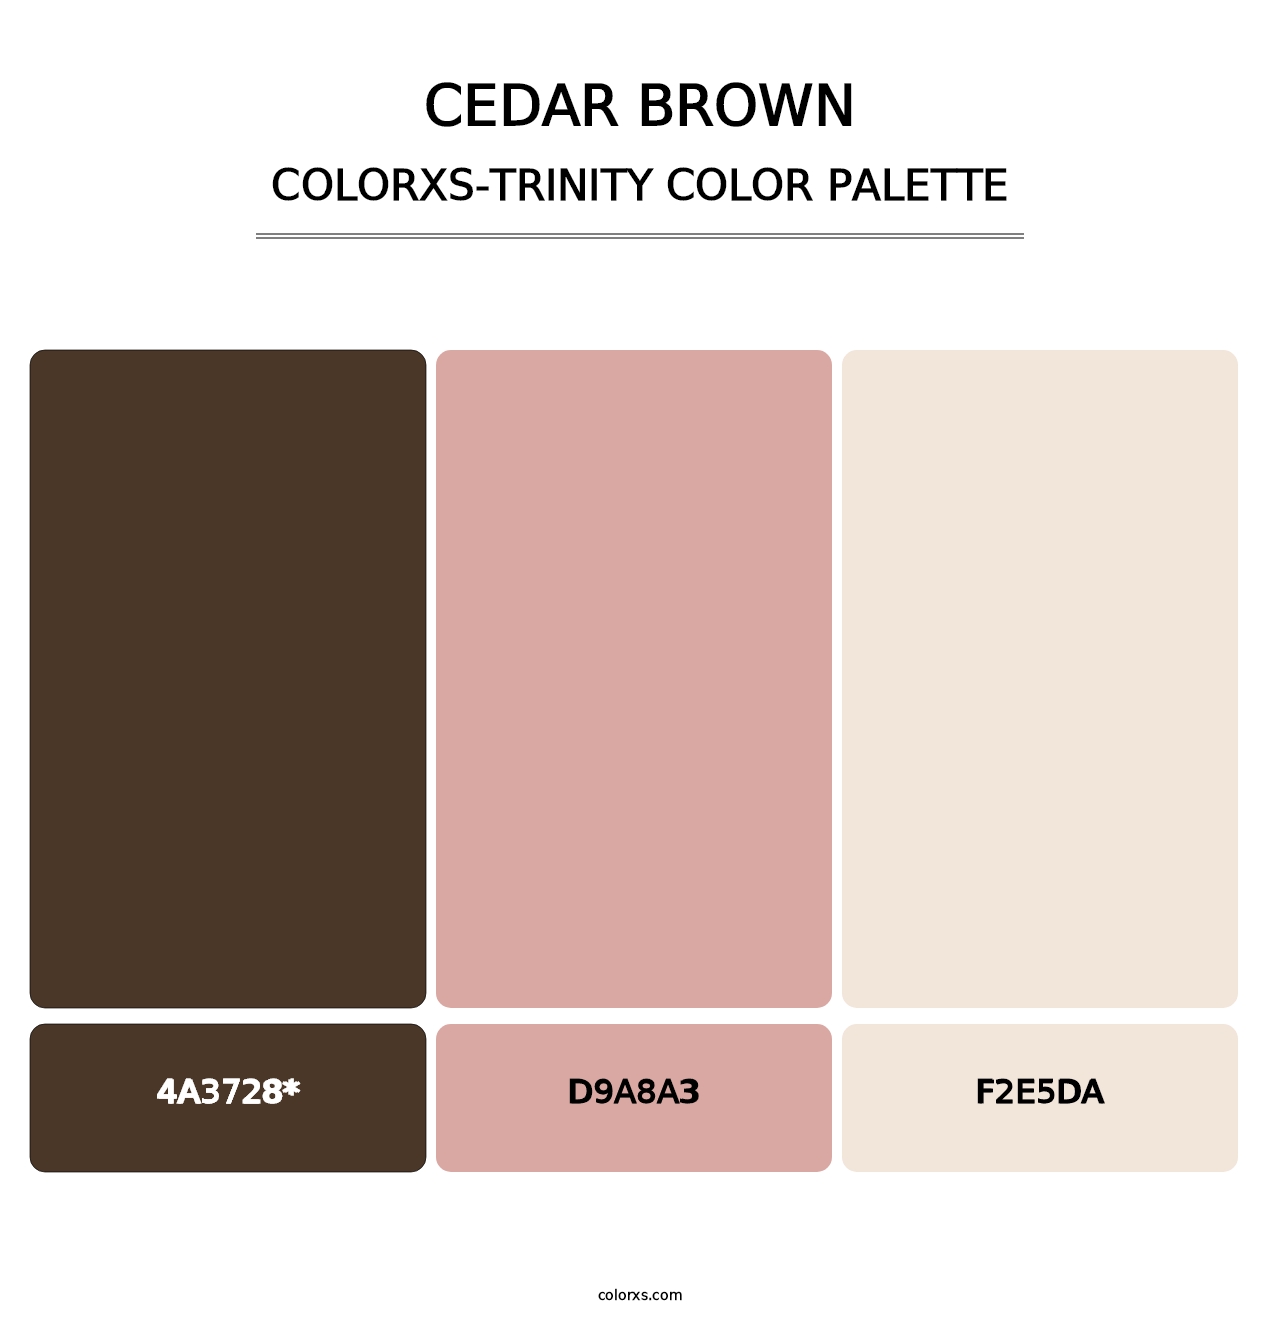 Cedar Brown - Colorxs Trinity Palette